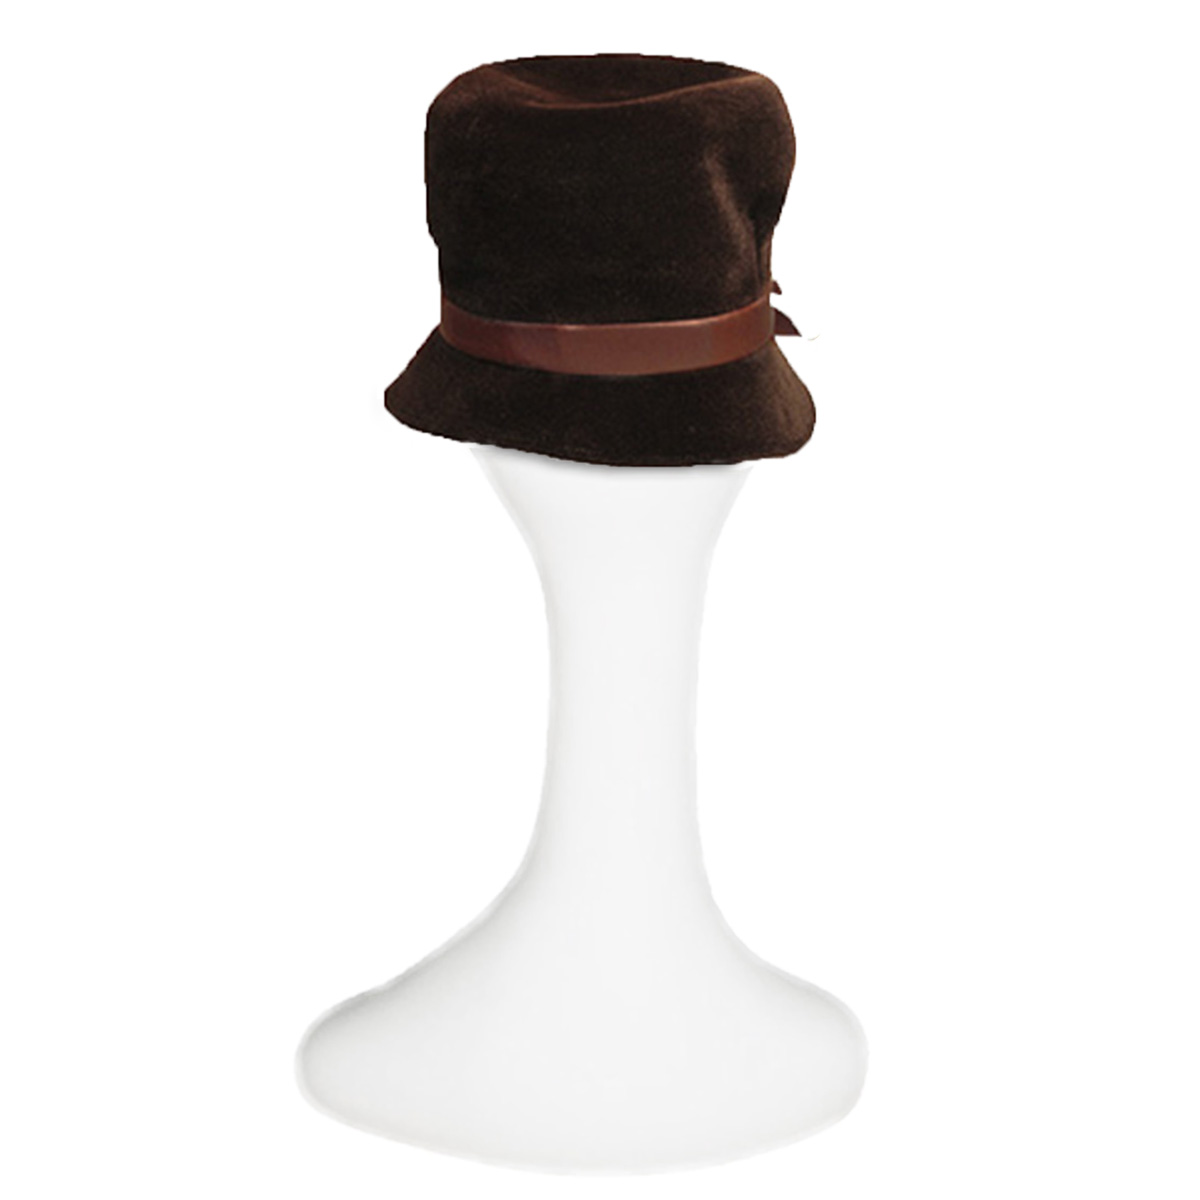 1940s fashion guild hat